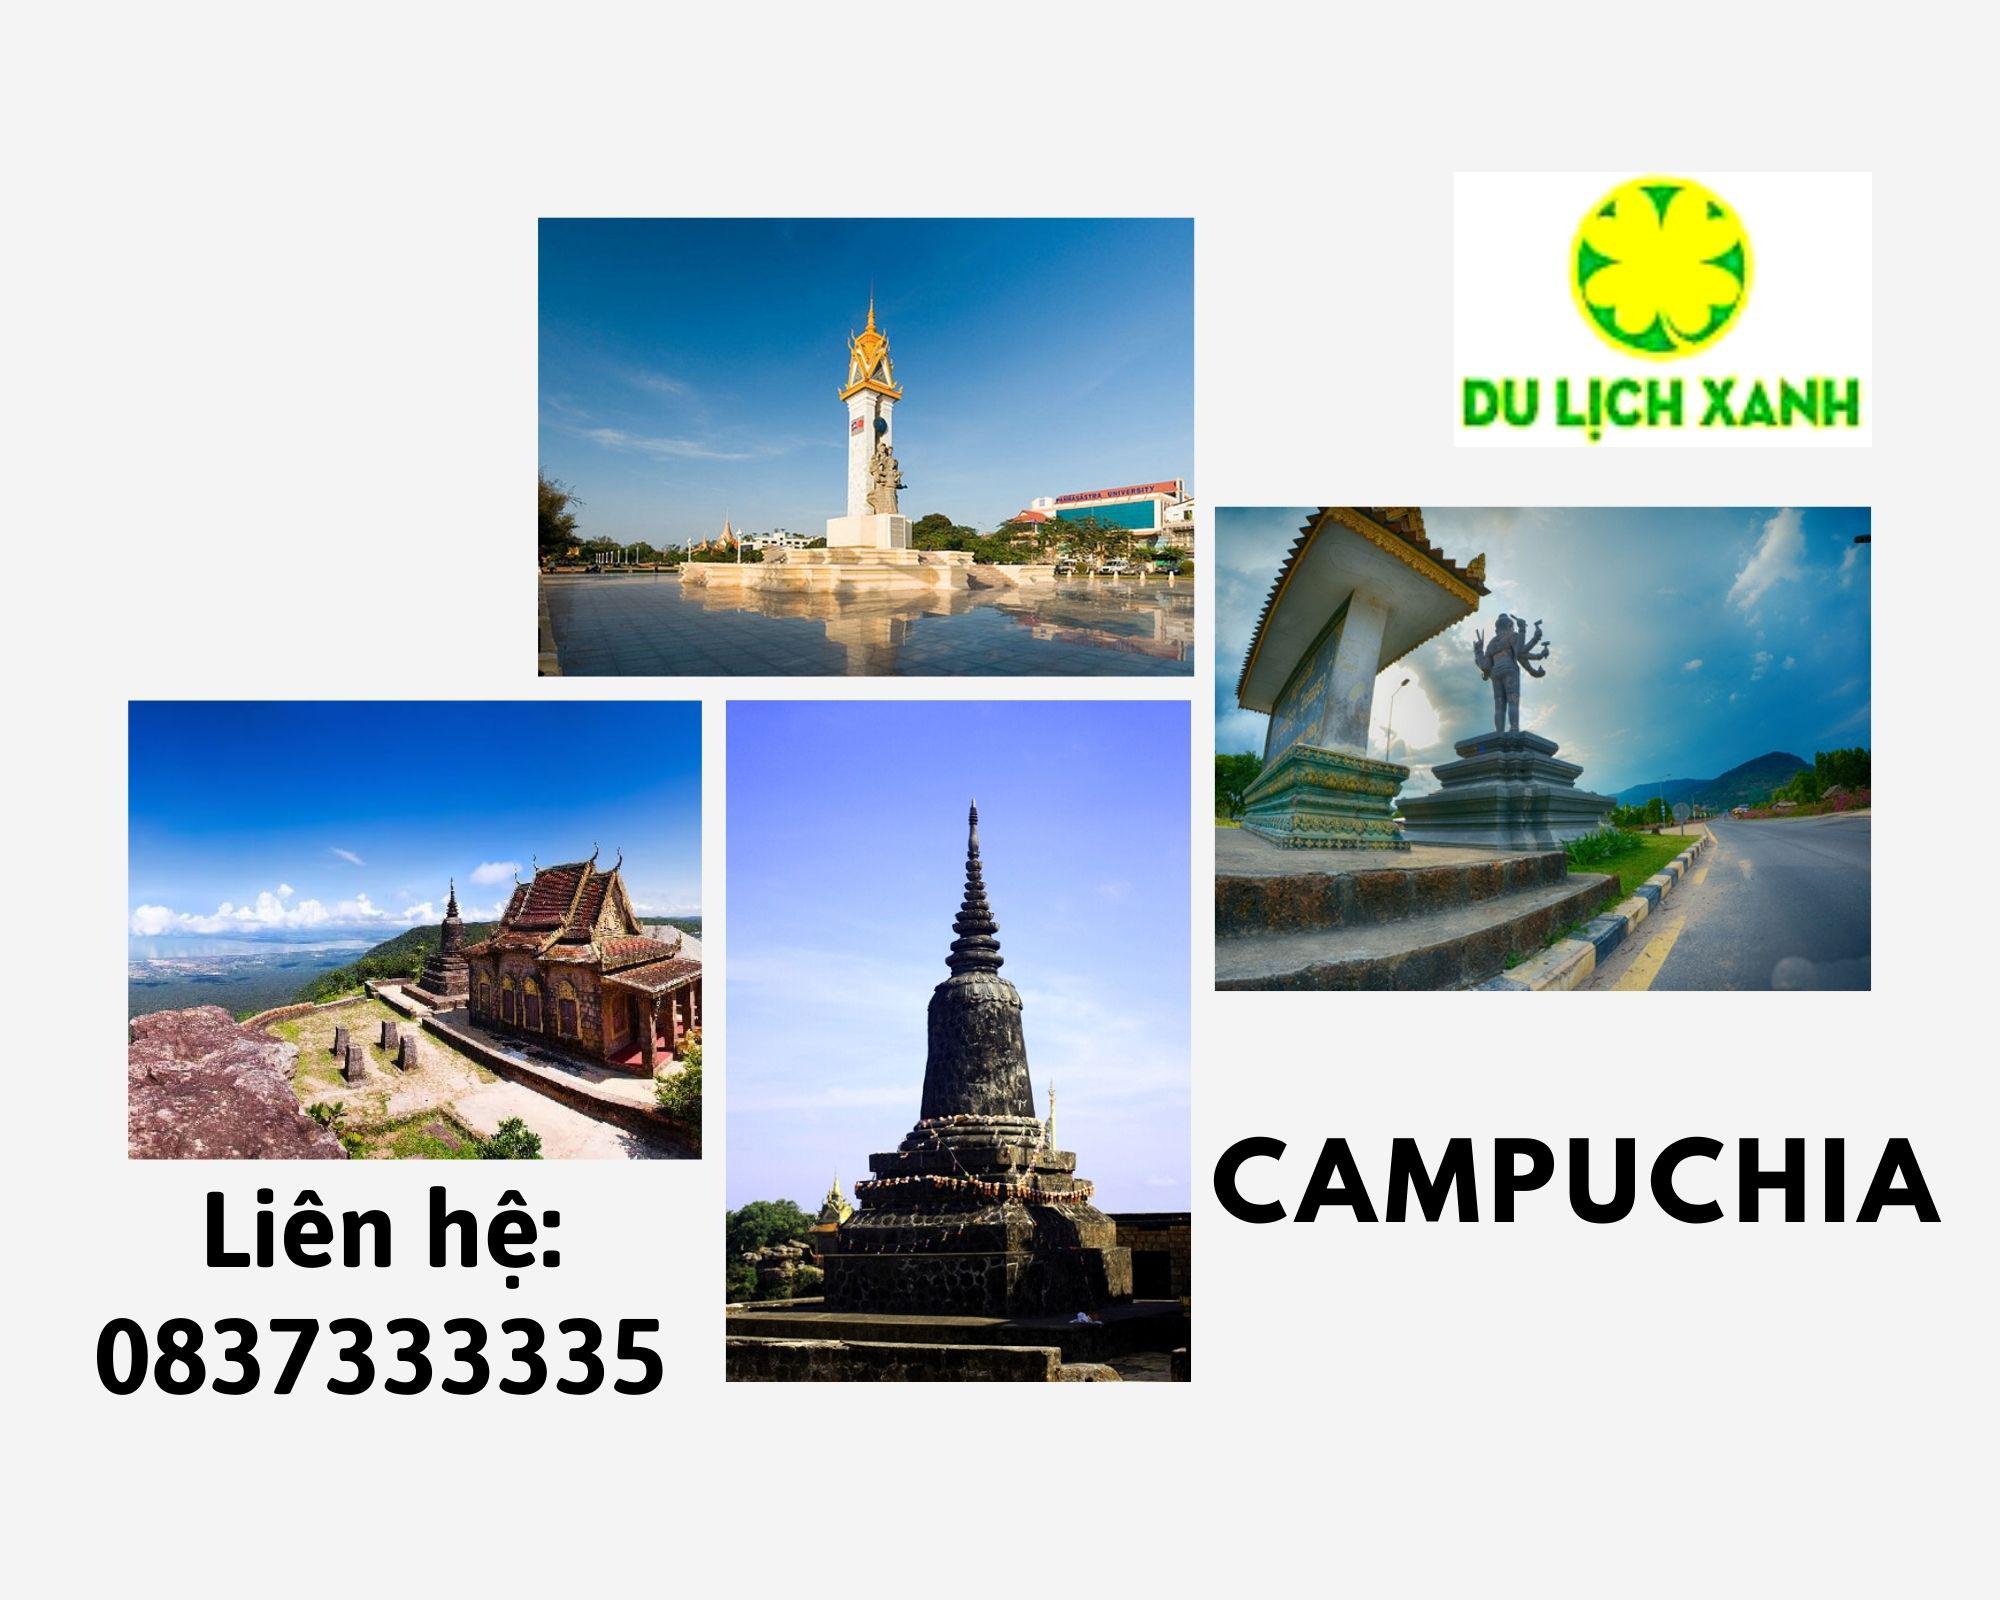 Tour du lịch Campuchia Sihanoukville - Đảo Kohrong từ TPHCM giá tốt 2022